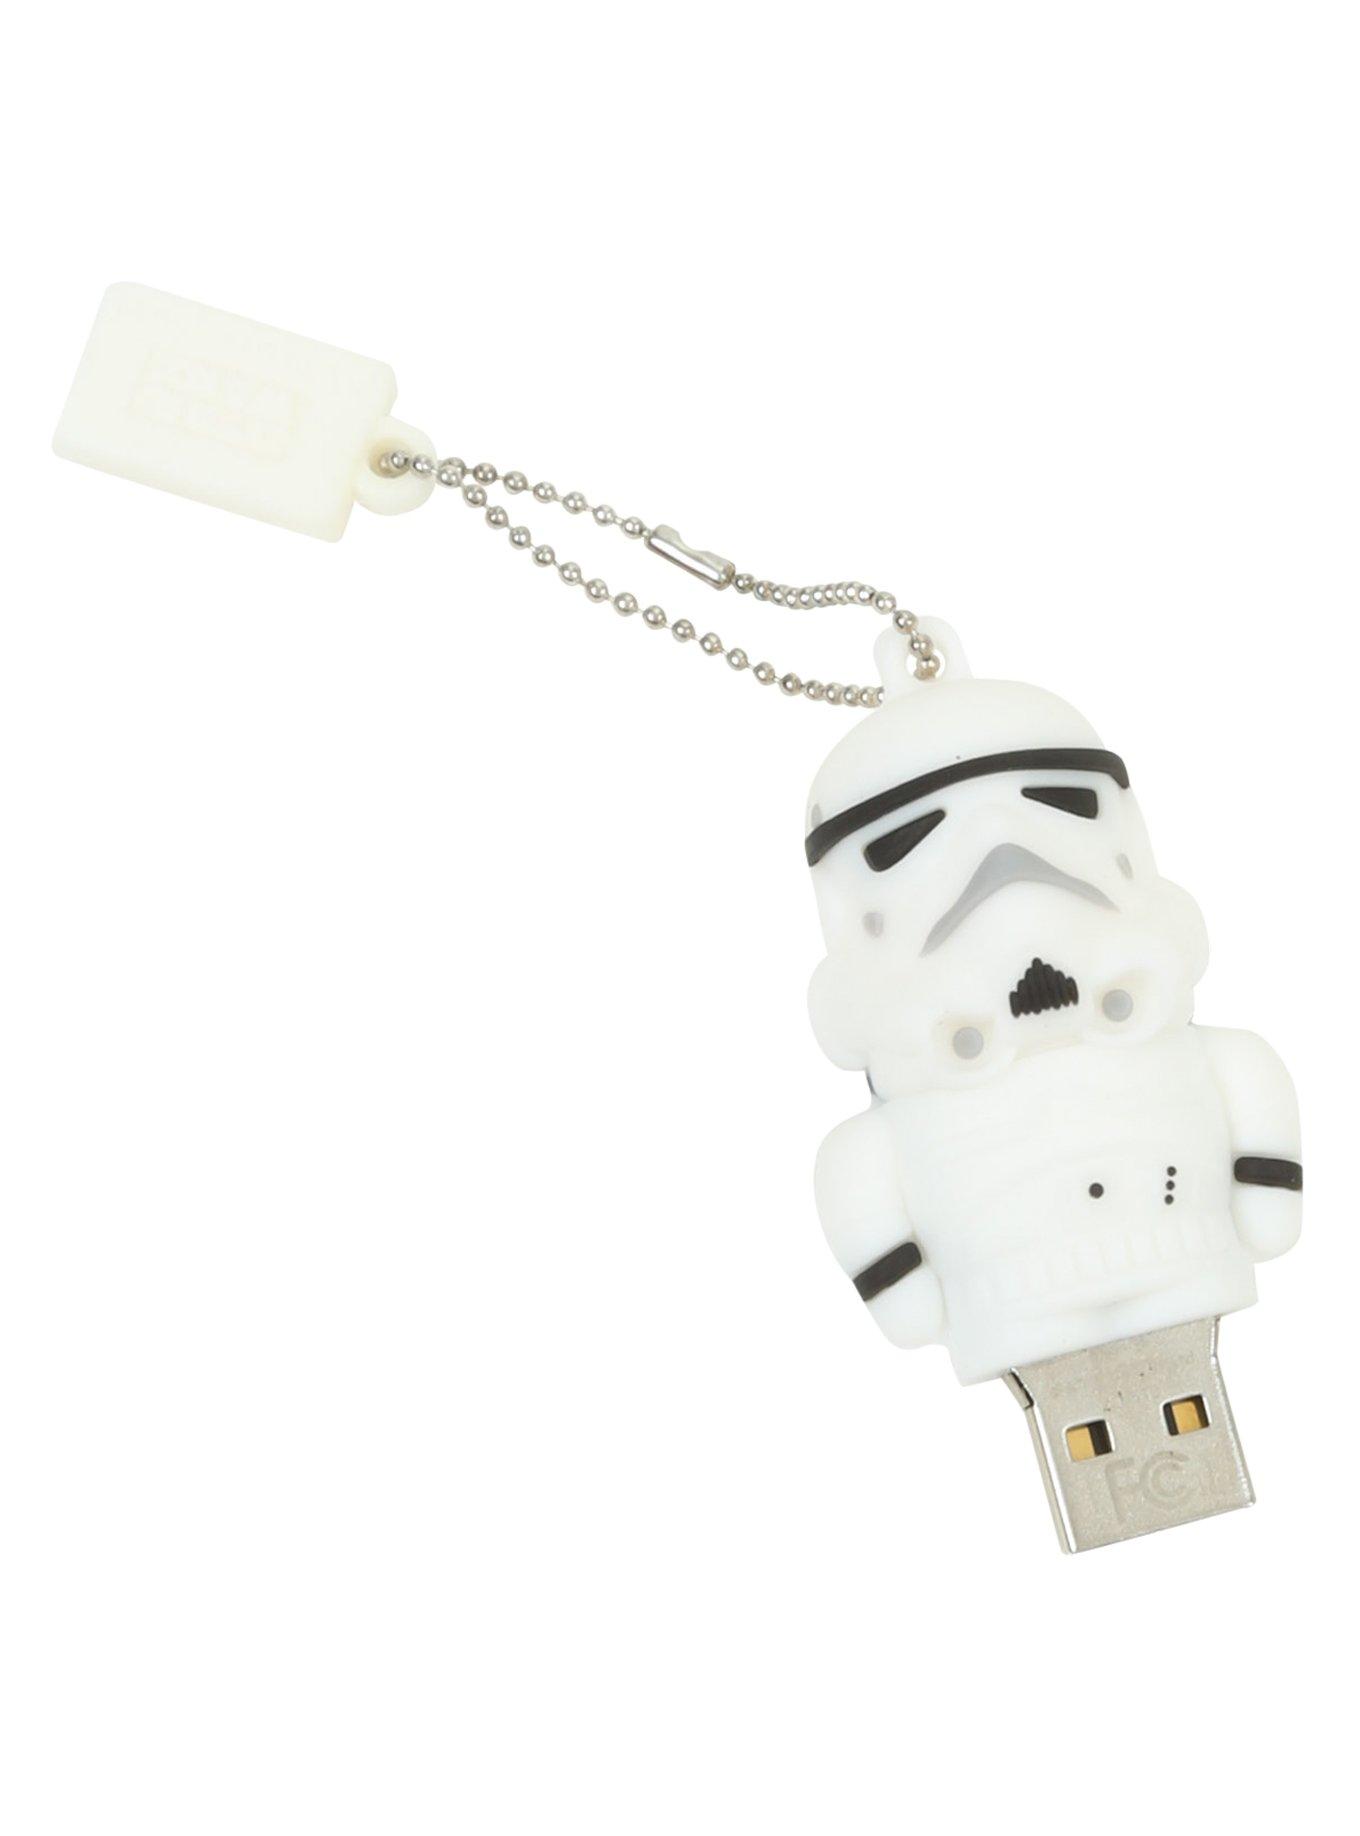 Star Wars Stormtrooper USB Drive, , alternate